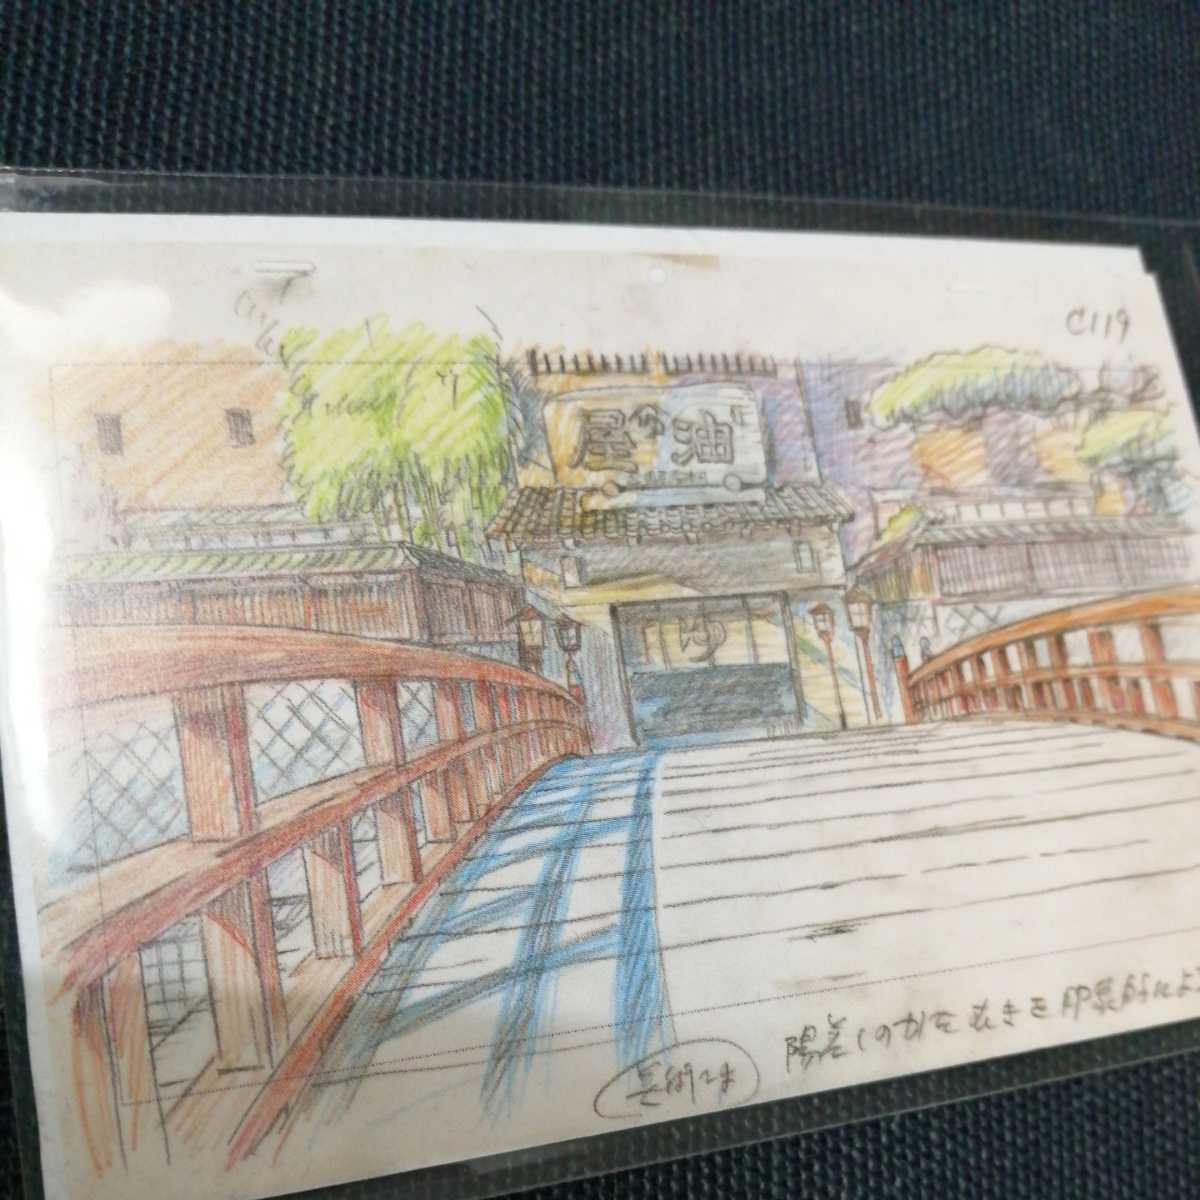  Studio Ghibli тысяч . тысяч .. бог .. расположение порез . карта осмотр ) Ghibli. открытка. постер исходная картина цифровая картинка расположение выставка Miyazaki .w